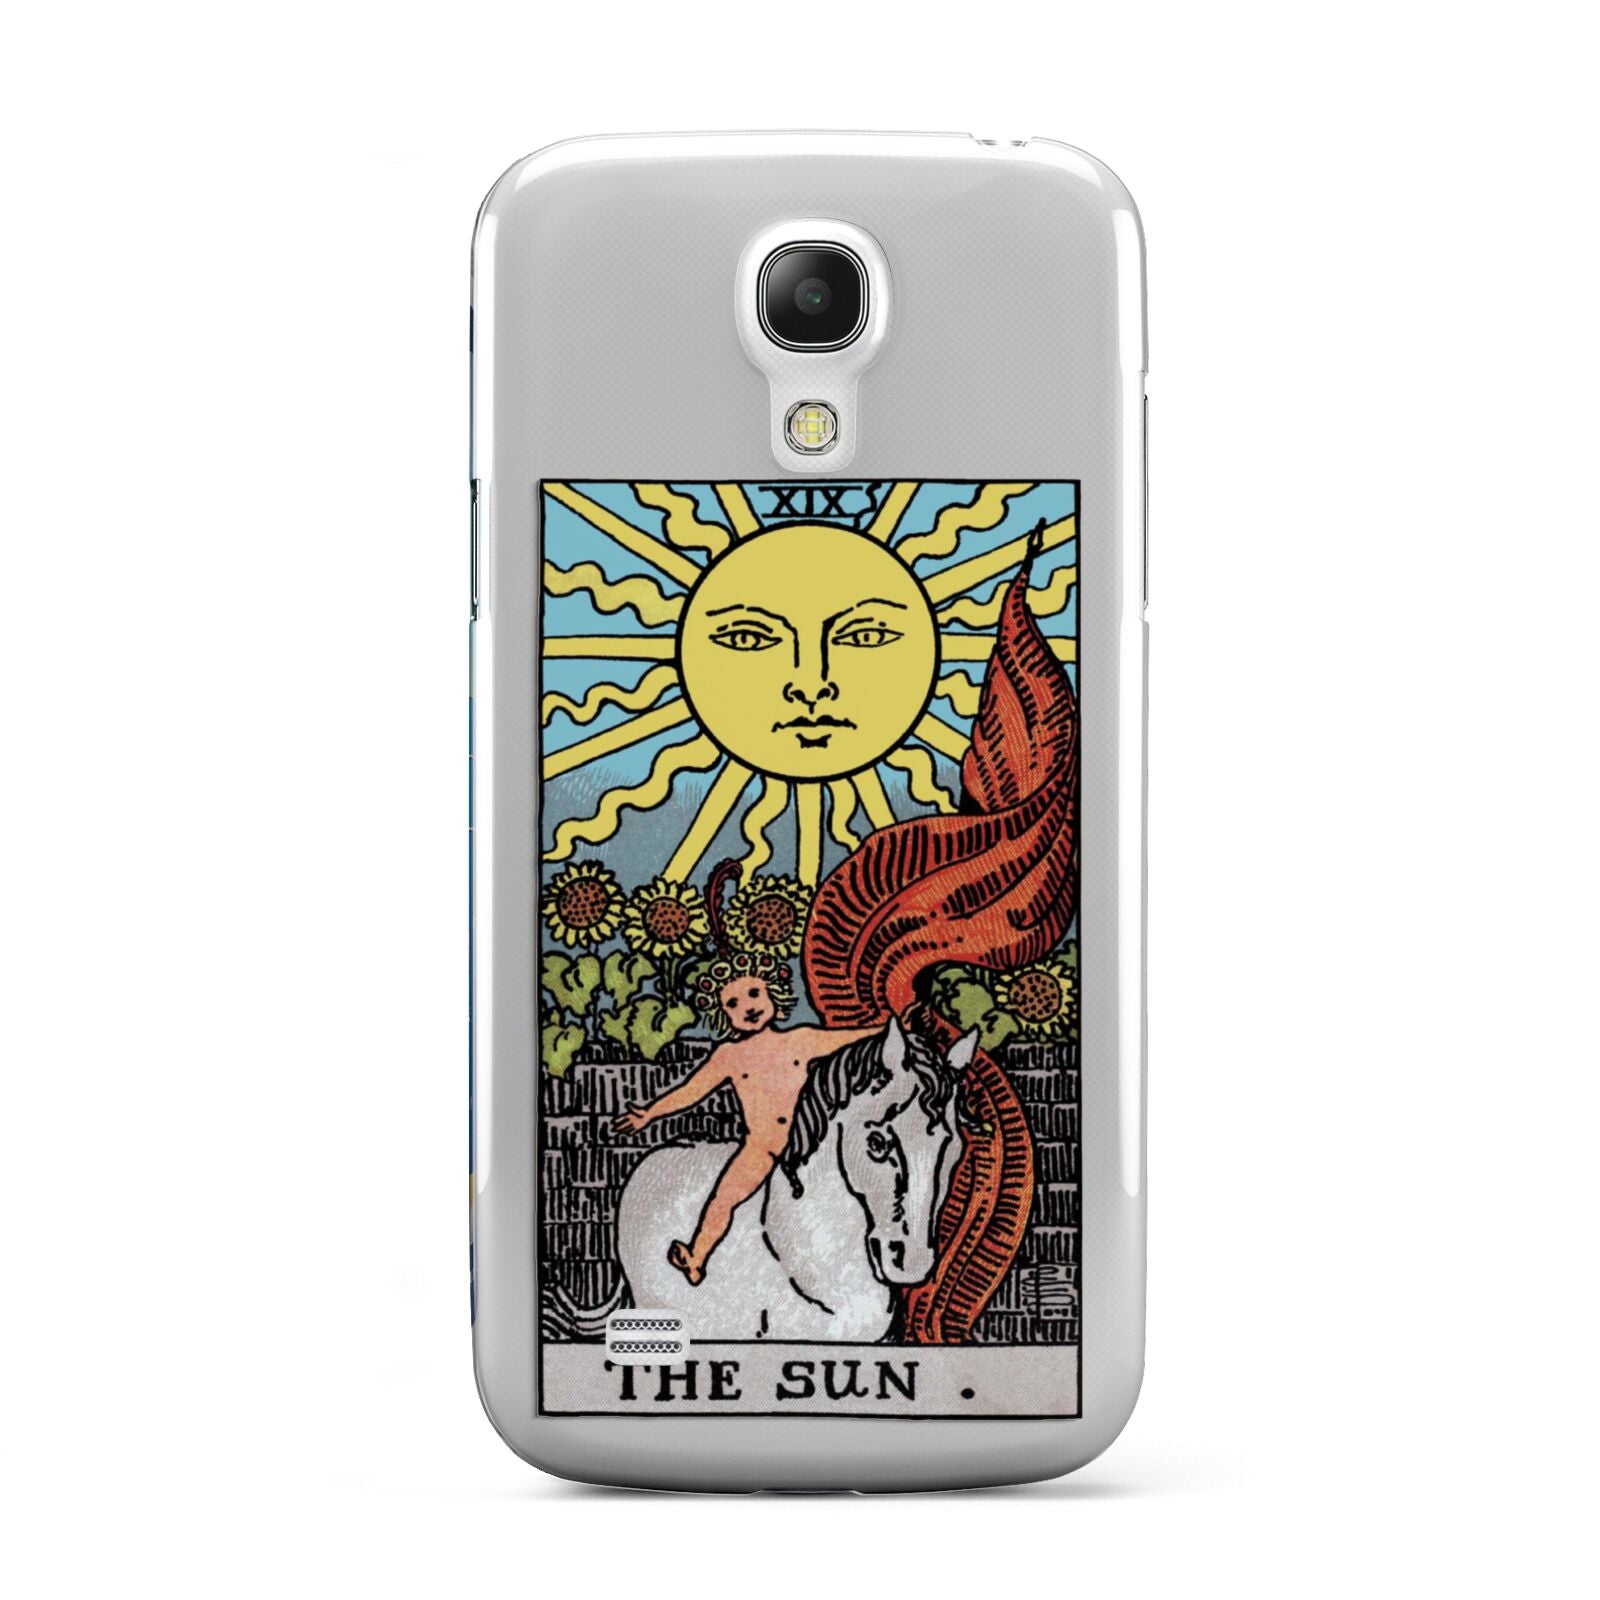 The Sun Tarot Card Samsung Galaxy S4 Mini Case